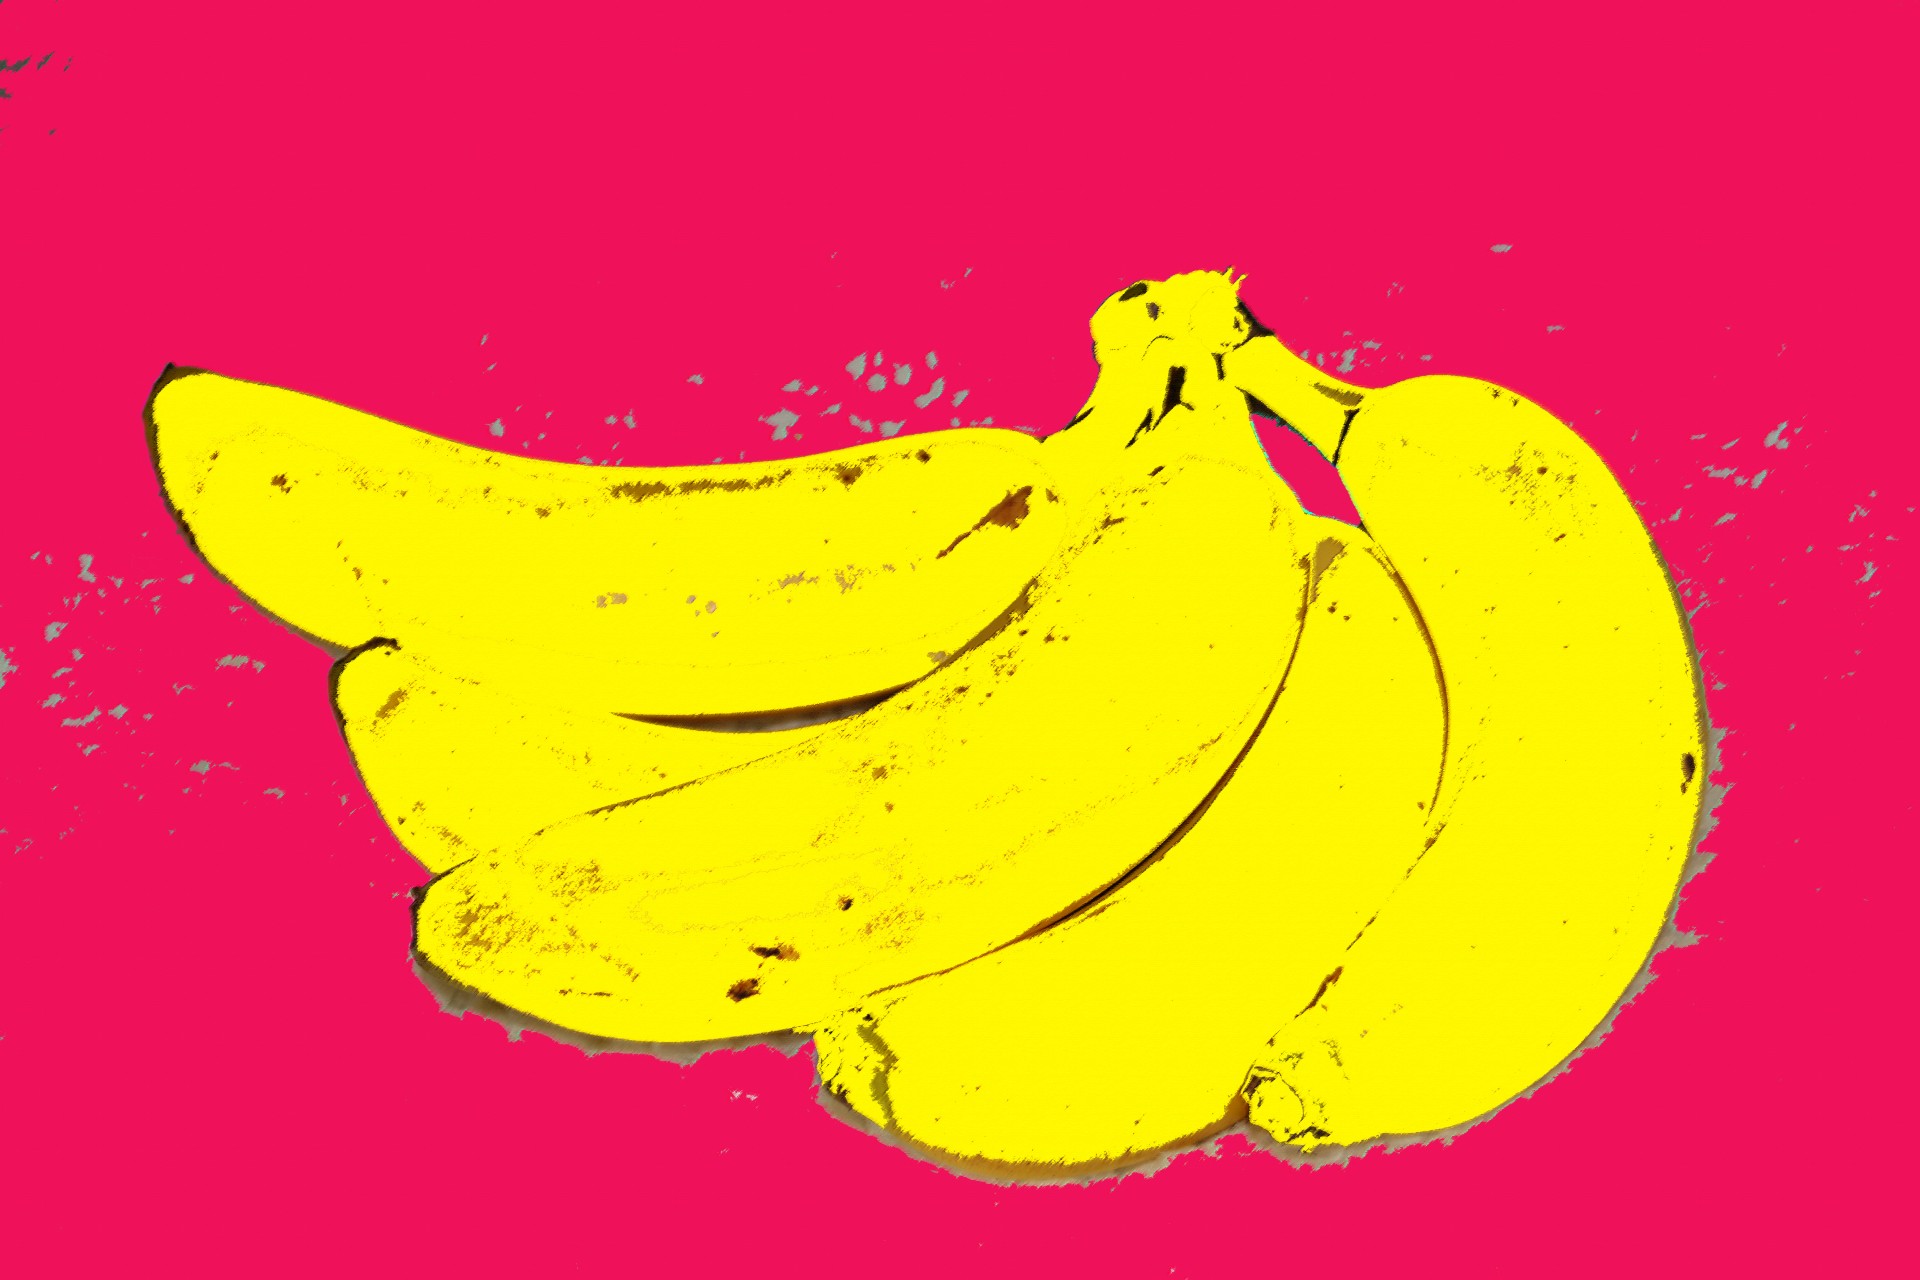 painting banana fruit free photo